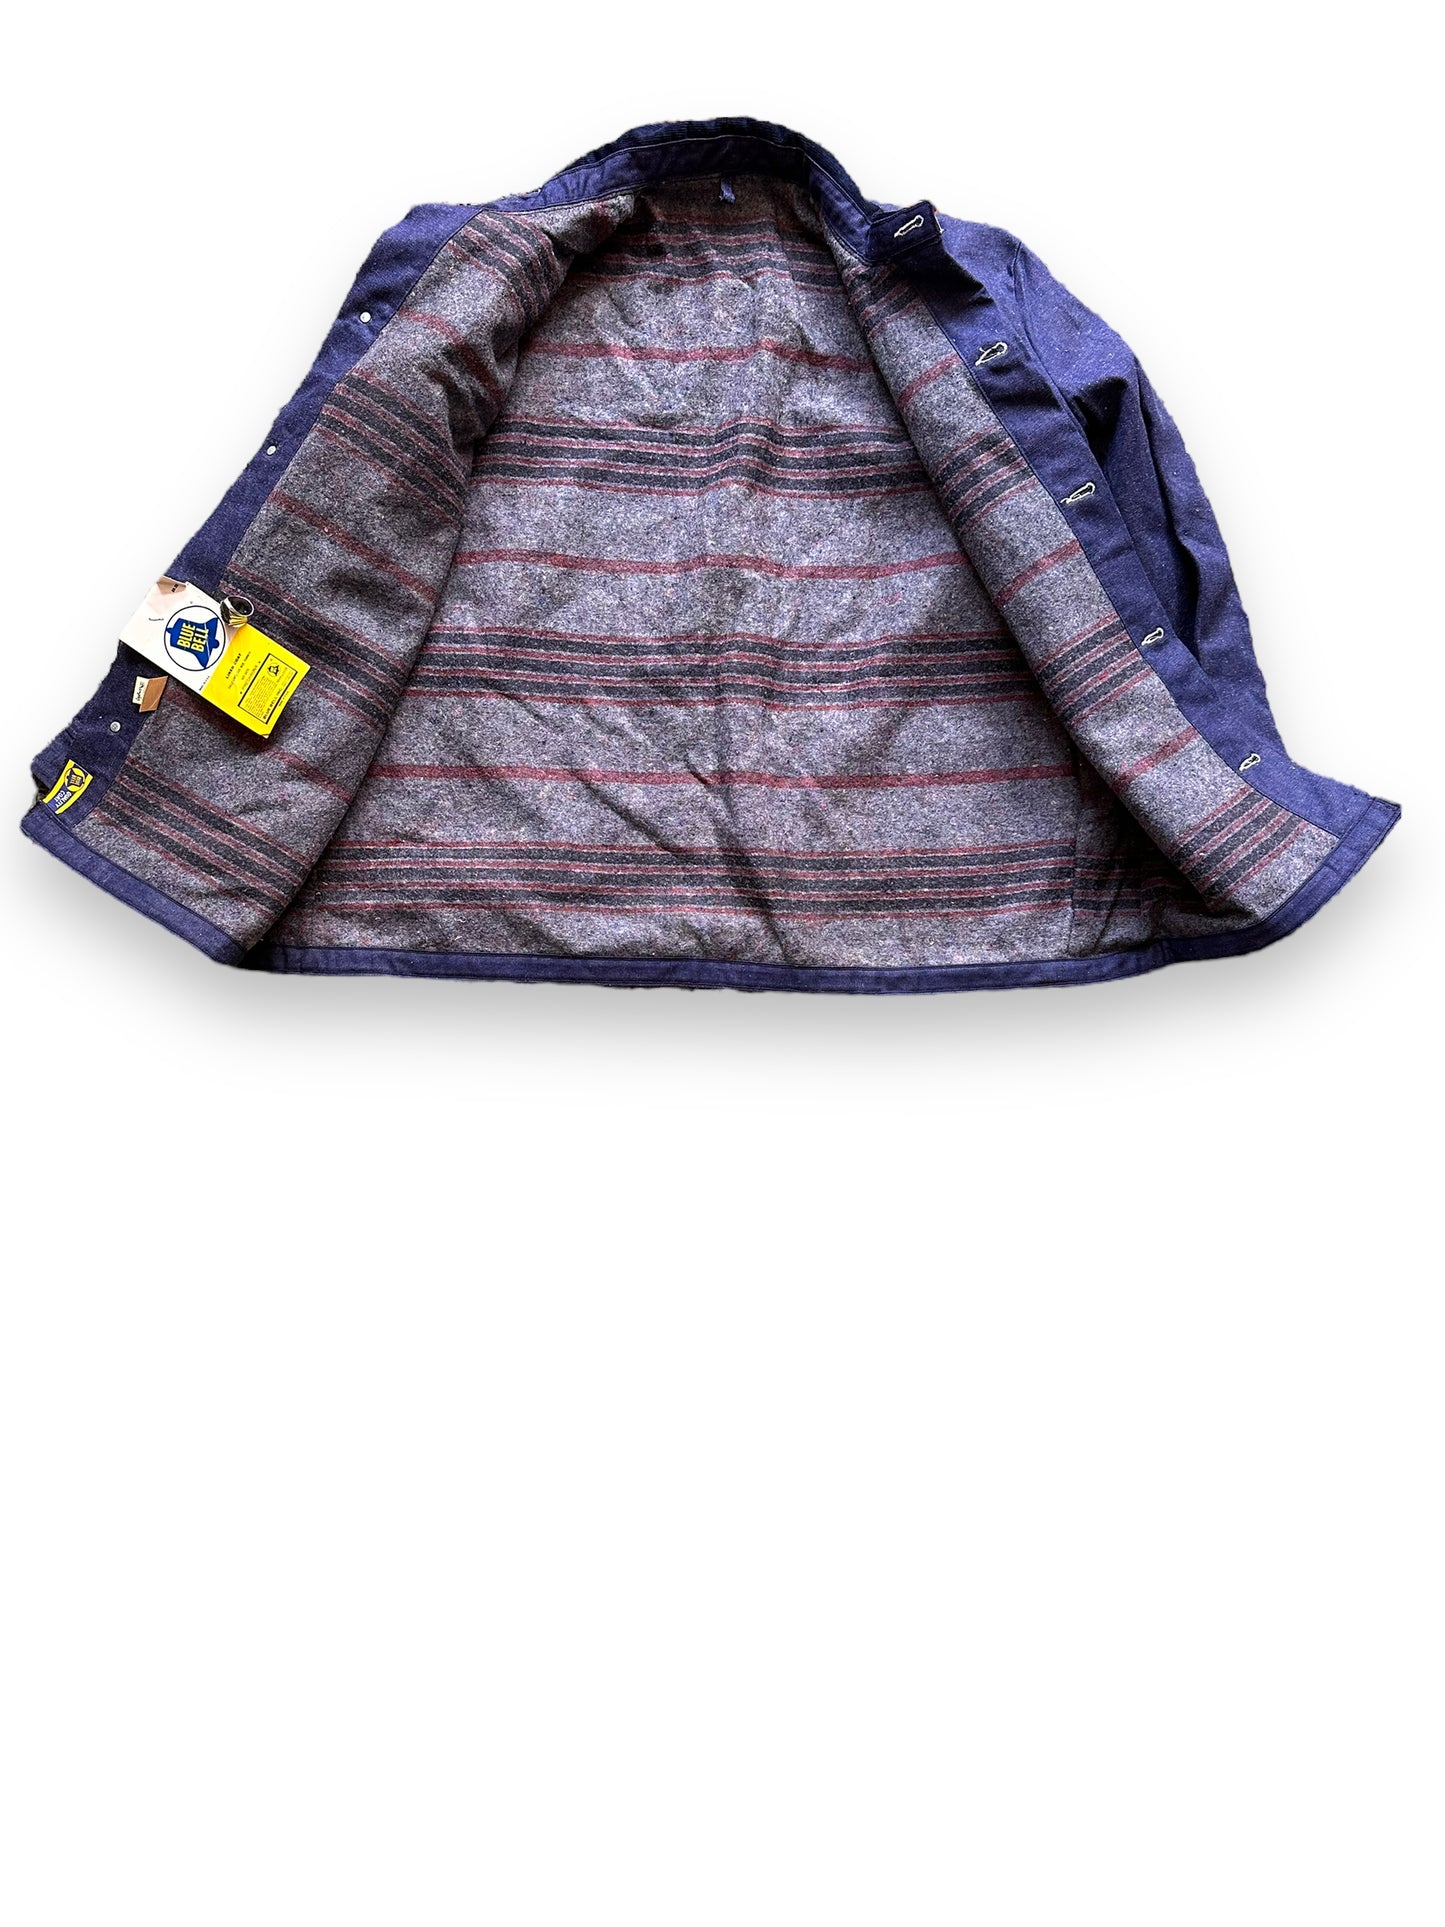 Liner View of Vintage NOS Blue Bell Blanket Lined Denim Chore Coat SZ 50 | Vintage Denim Chore Coat | Barn Owl Vintage Seattle